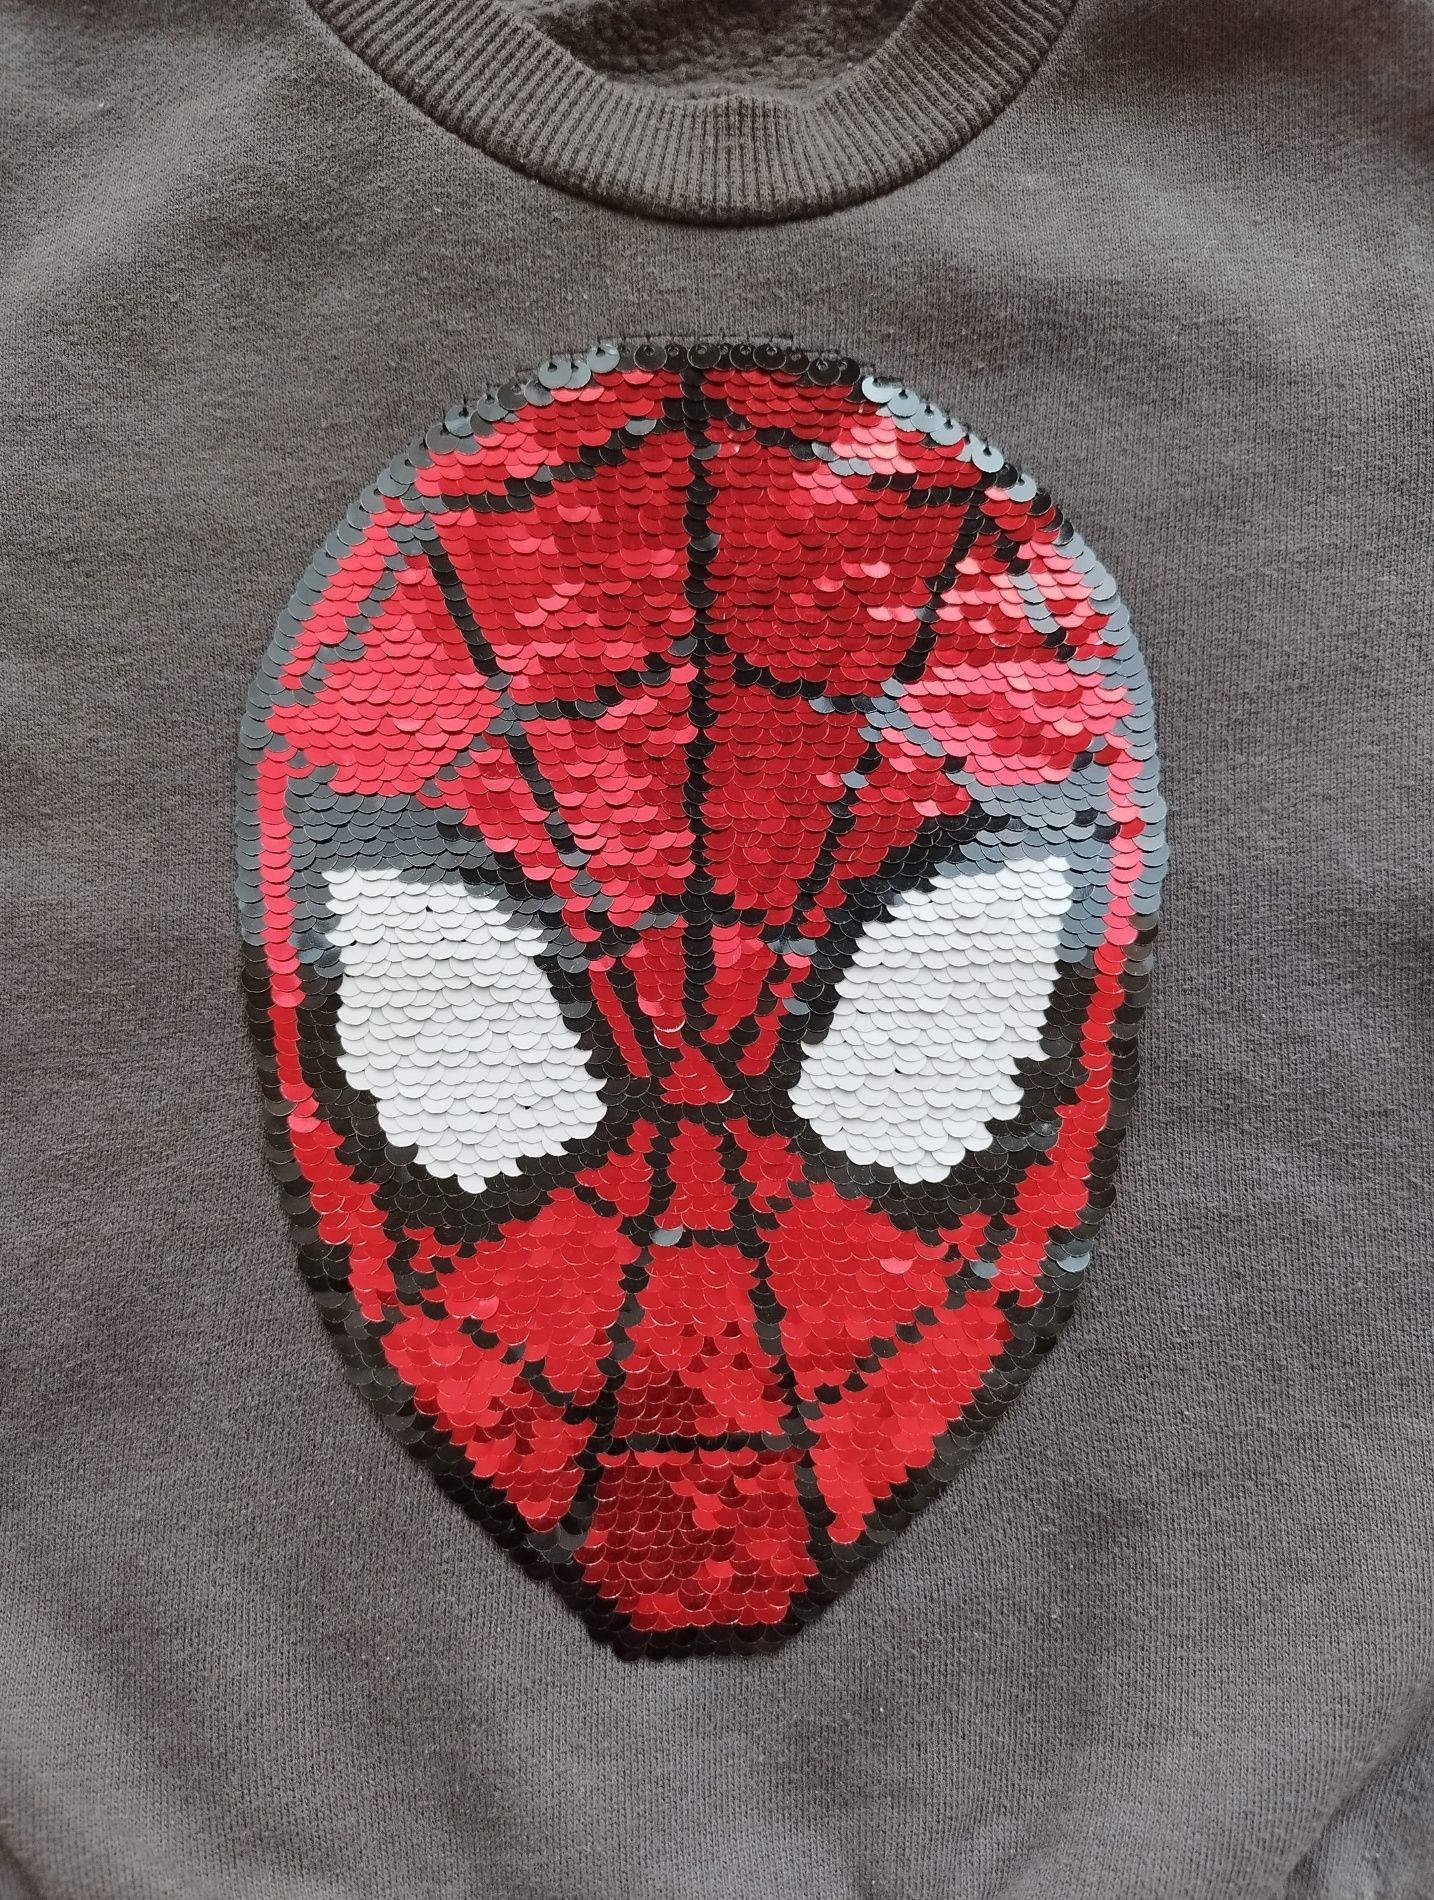 Ocieplana dresowa bluza przez głowę Spiderman Cool Club r.98